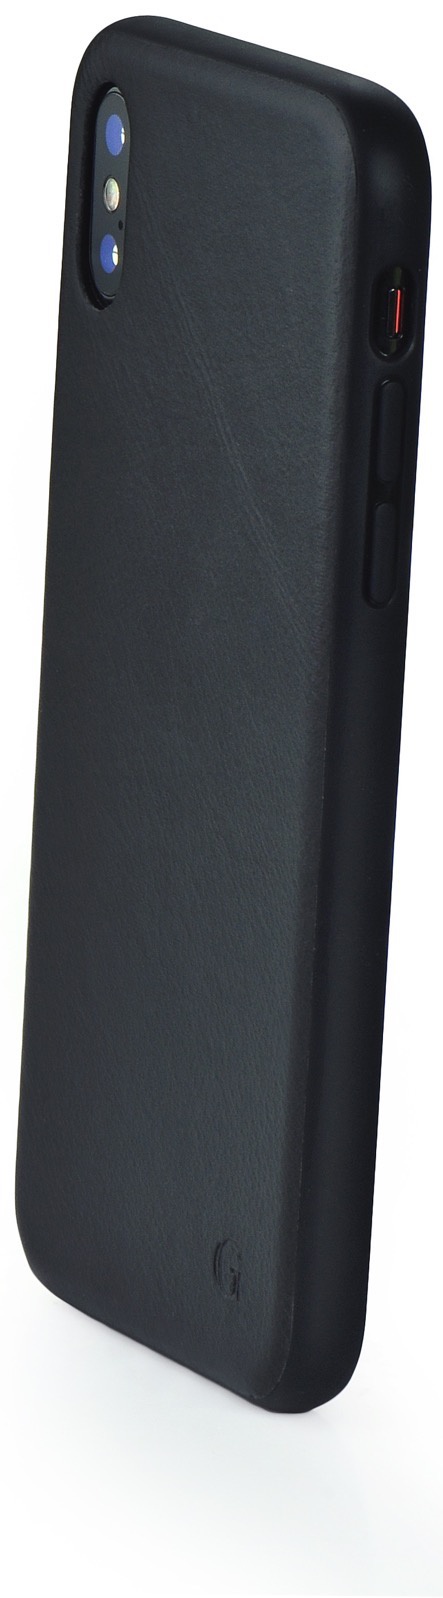 Чехол для сотового телефона Gurdini Premium Leather Case black GPLCBK-XS01 для Apple iPhone X/XS 5.8